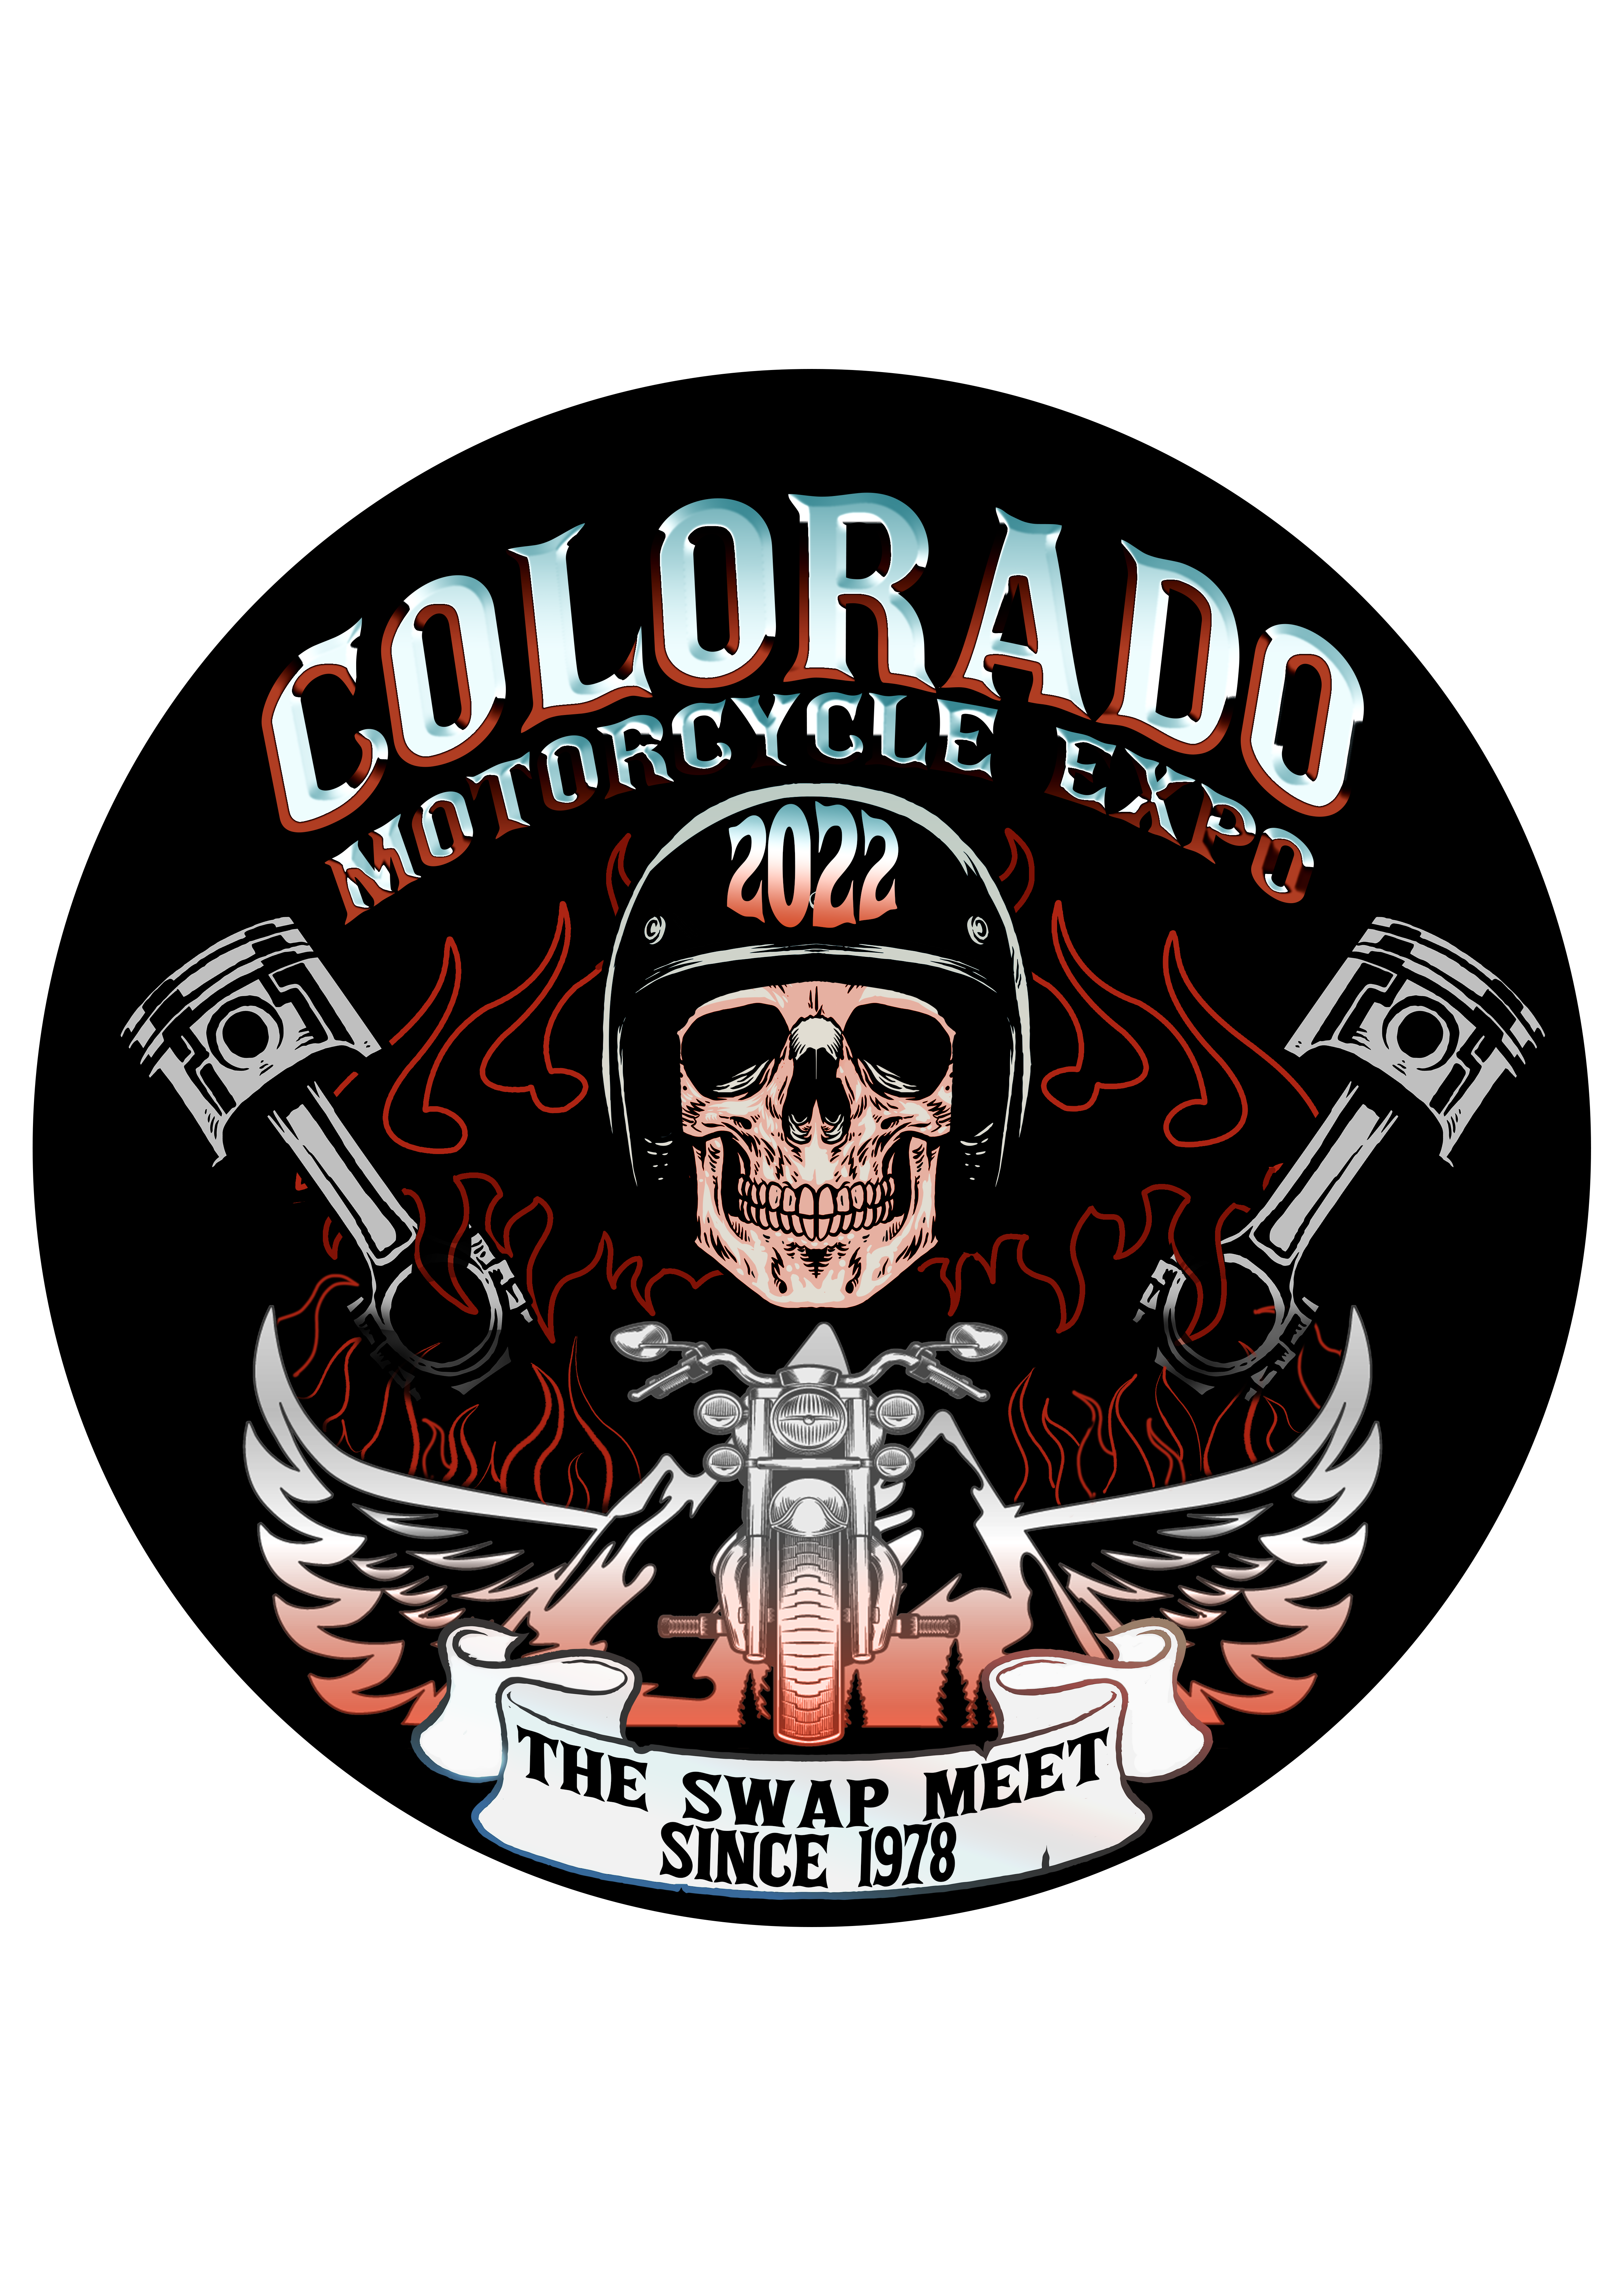 Colorado Motorcycle Expo 2022